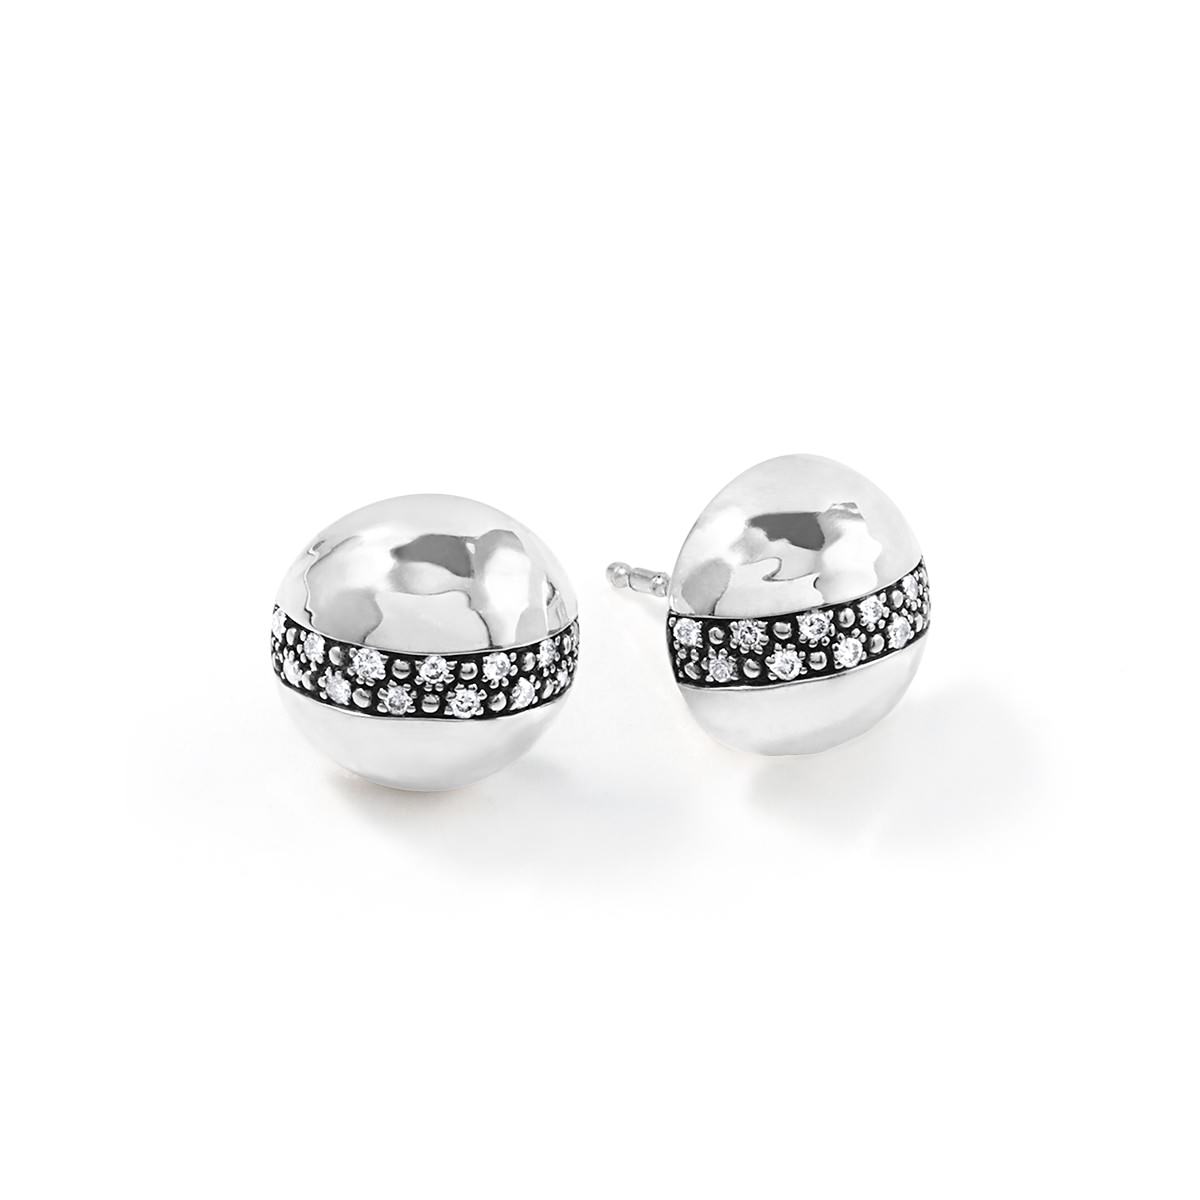 sperical shape silver earrings